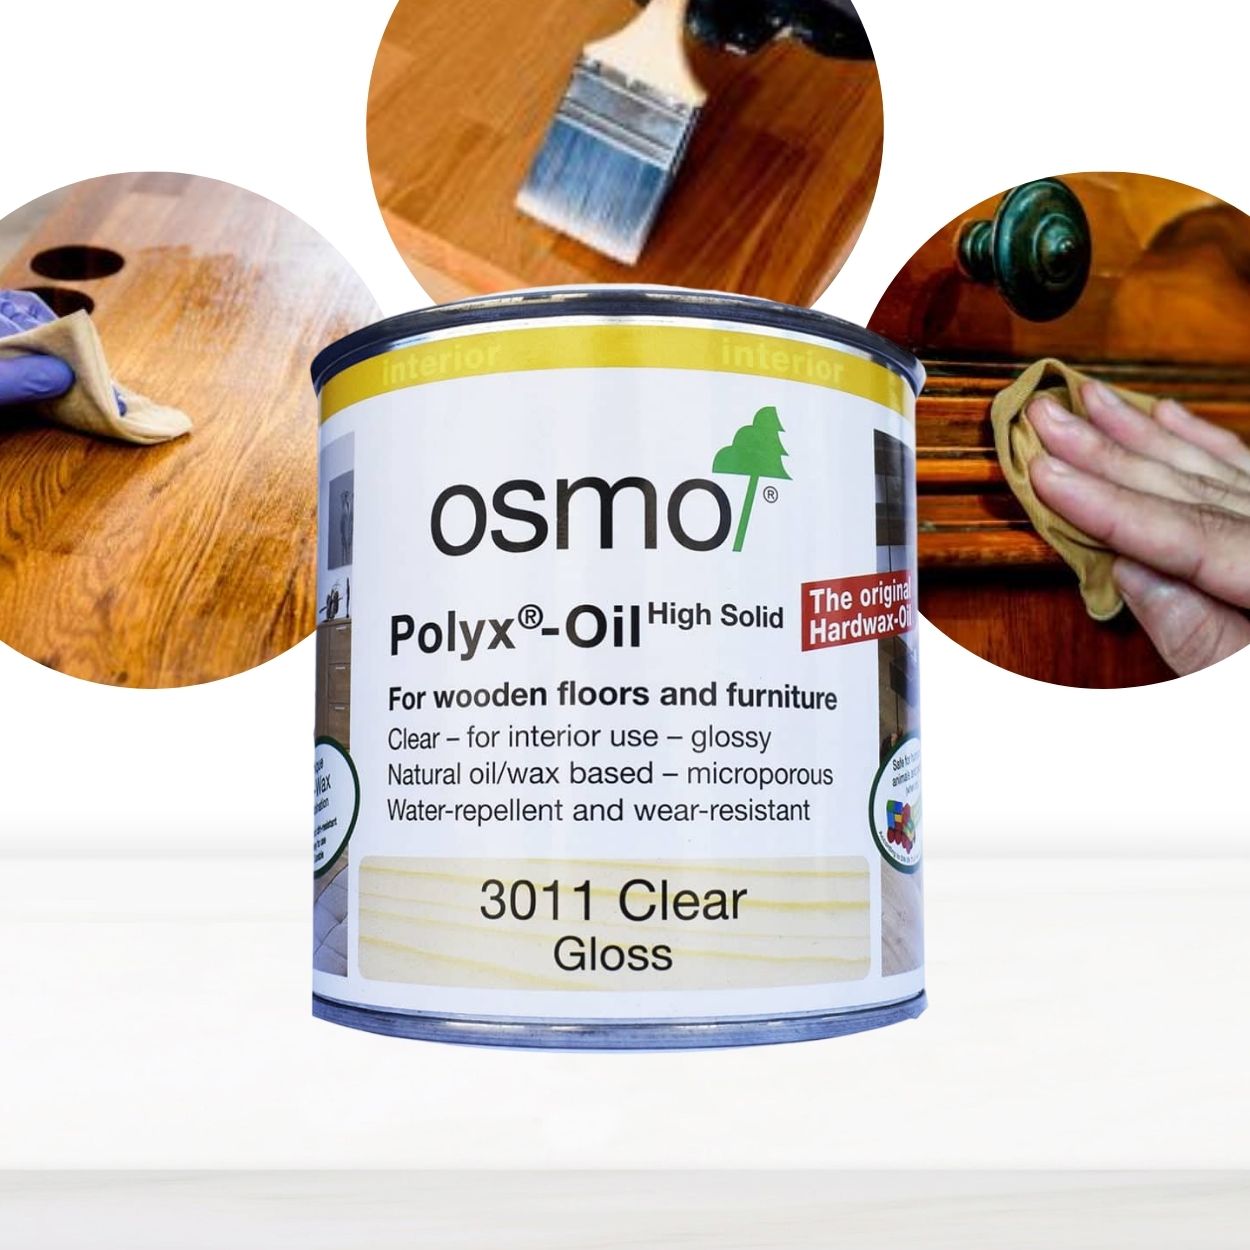 Cera dura al aceite de Osmo para acabados brillantes en tus mesas y piezas de resina.